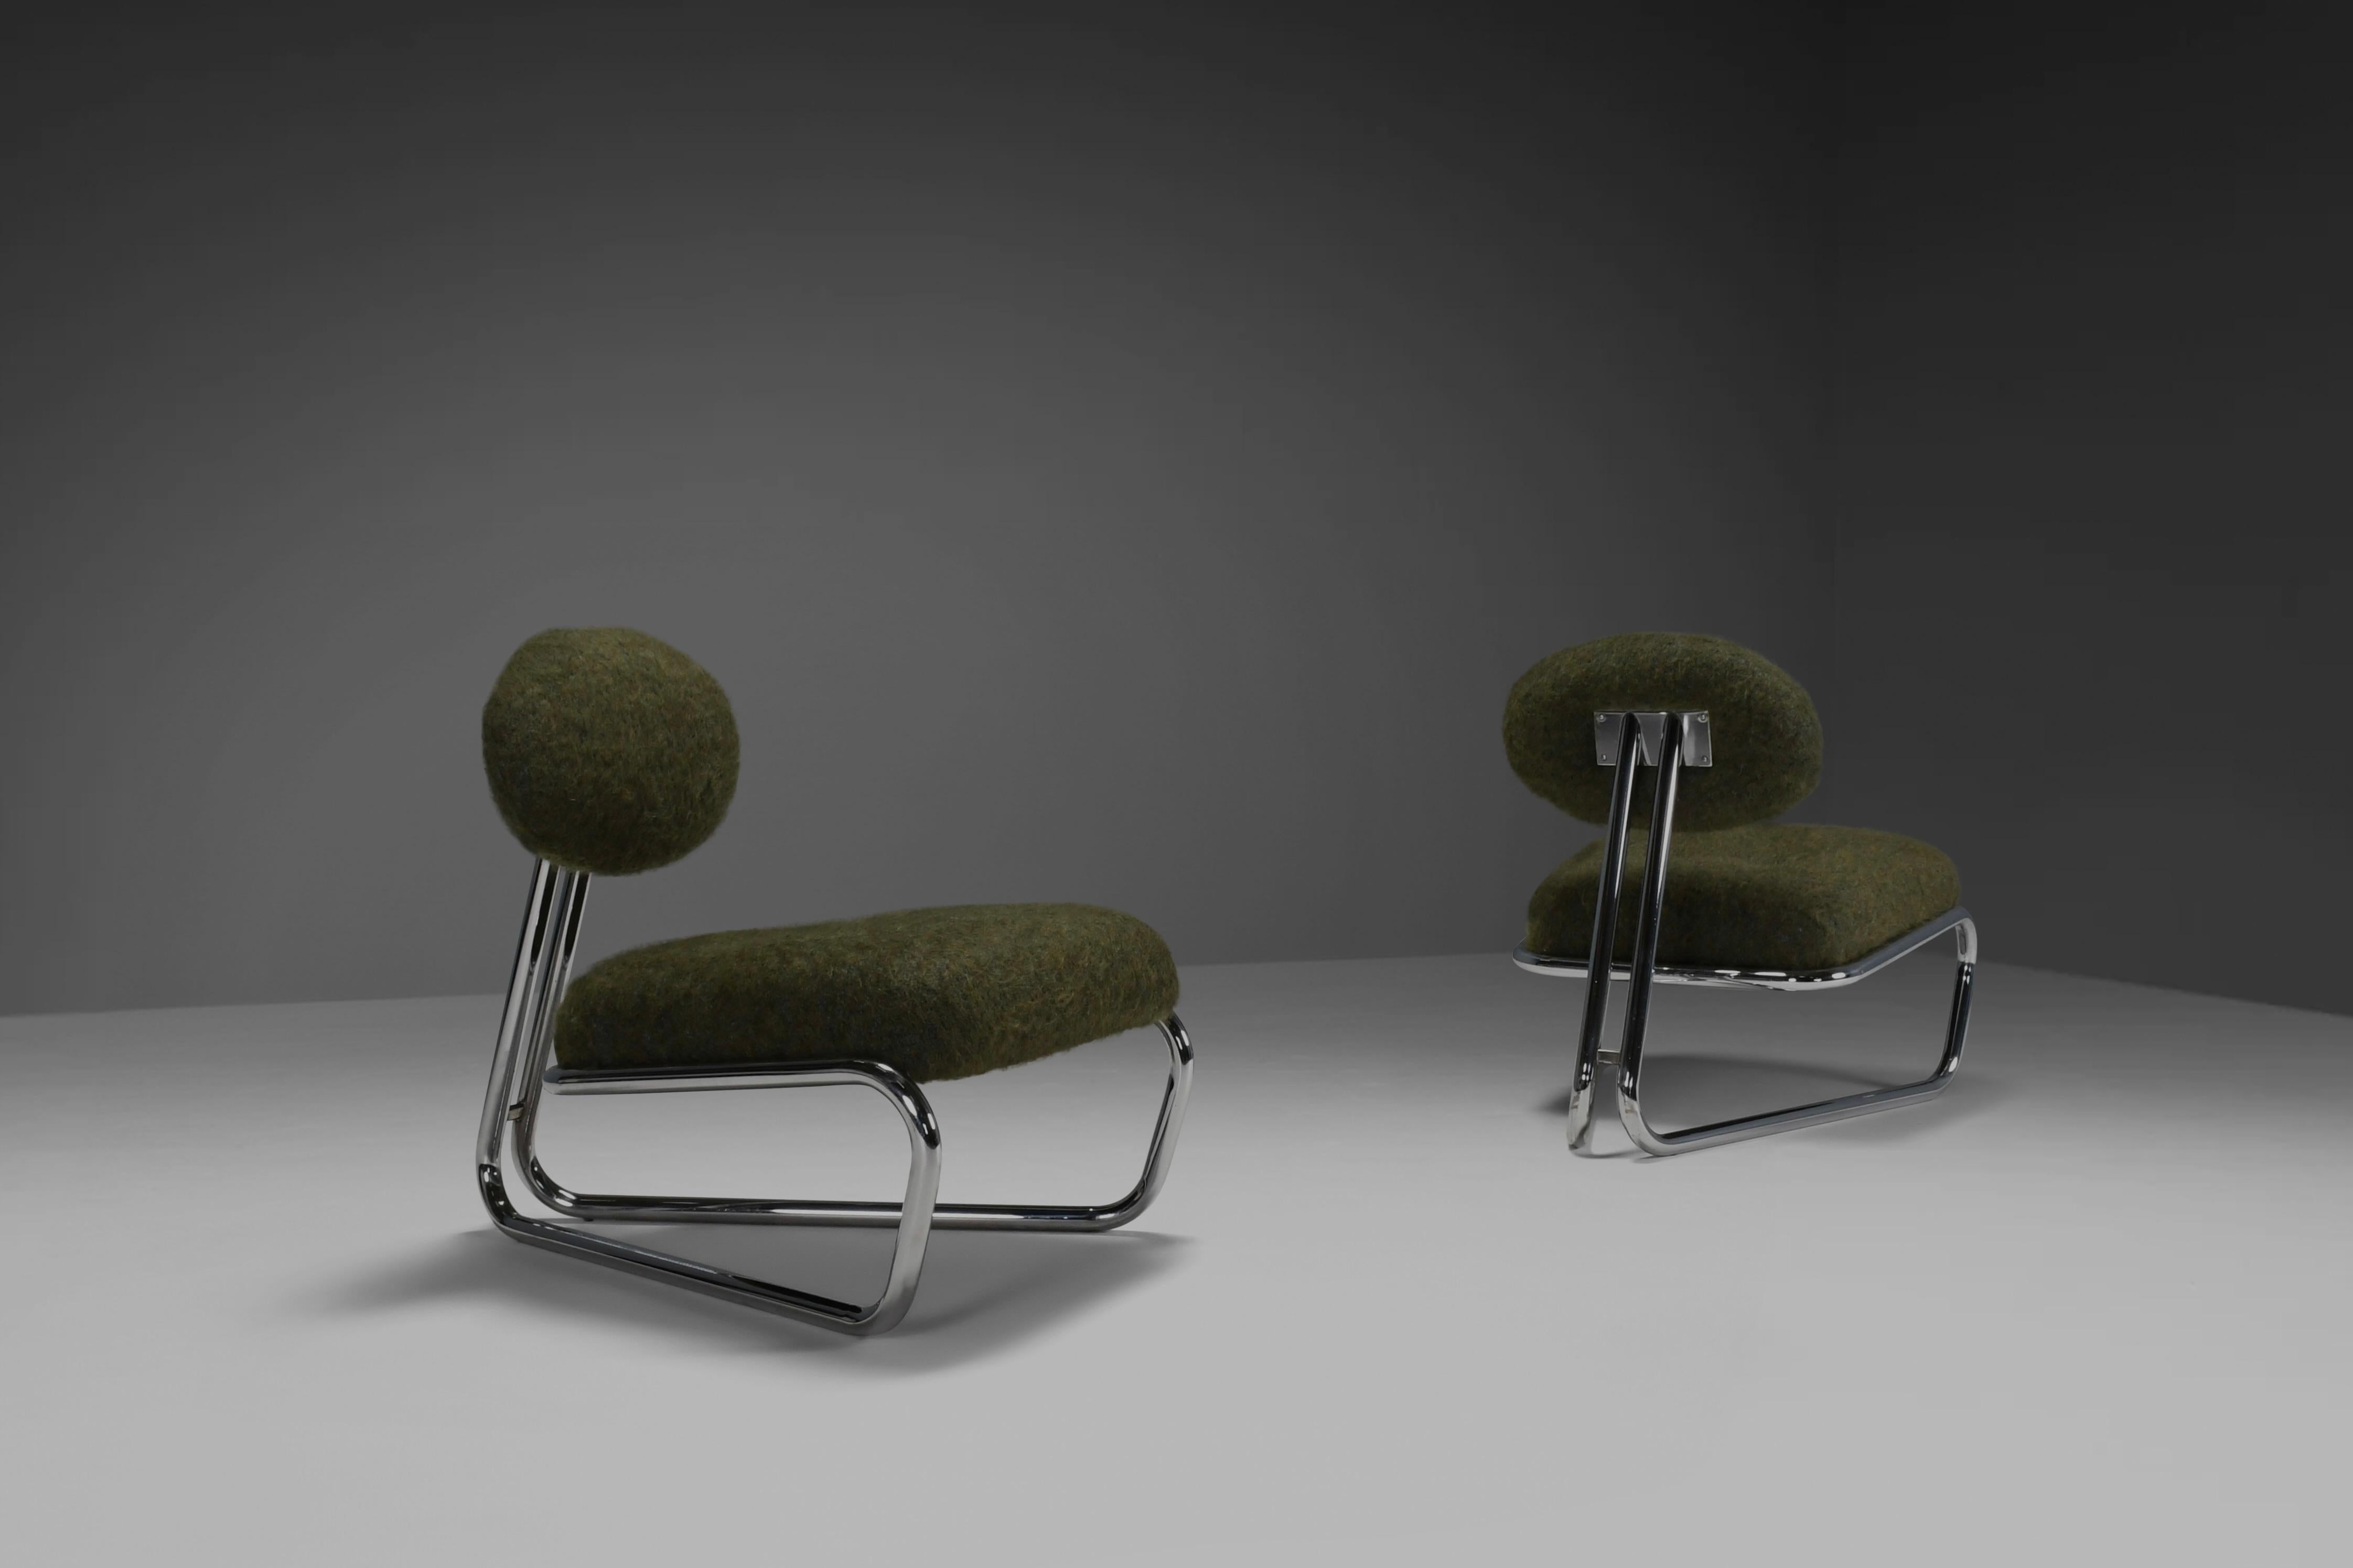 Magnifiques chaises longues modernistes en très bon état.

Ces chaises ont été produites dans les années 1970 en Italie.

Les cadres en porte-à-faux sont fabriqués en acier chromé, ce qui leur confère une finition brillante. 
Elles ont une belle